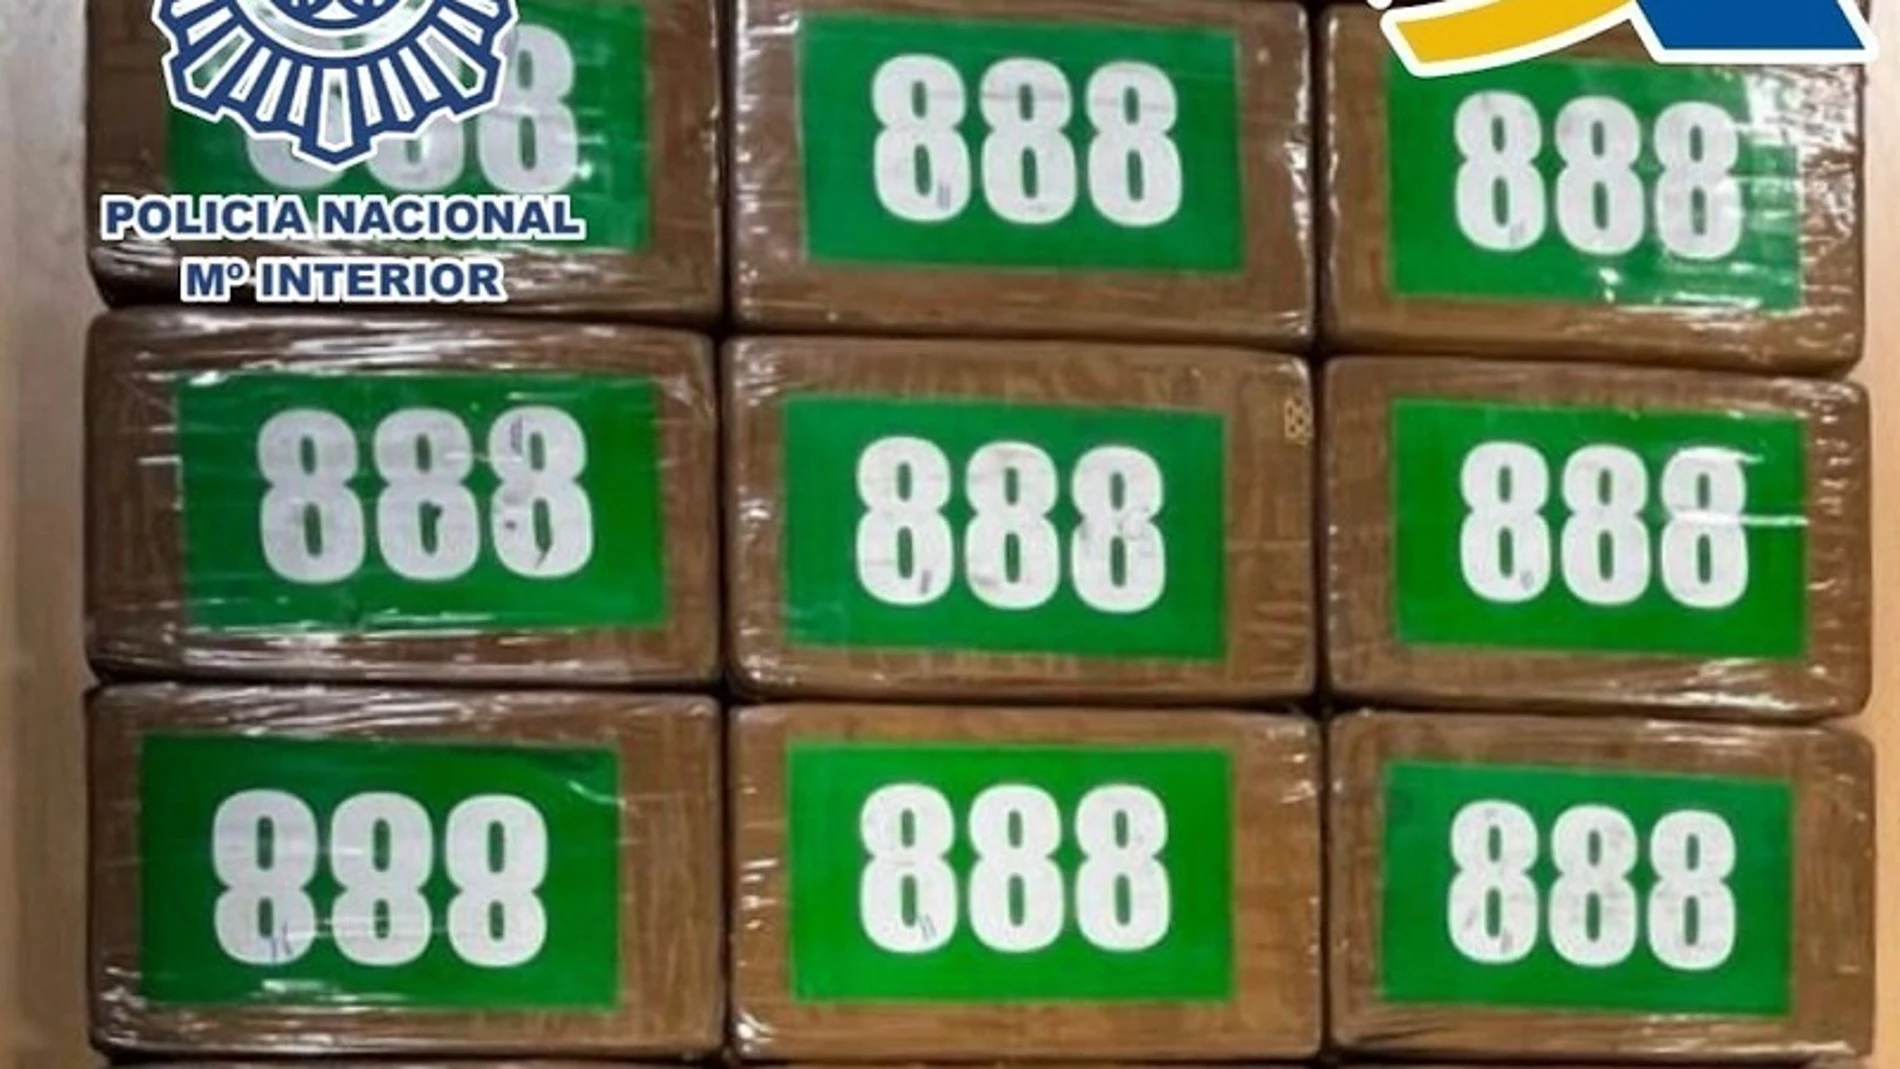 La droga se encontraba oculta en un compartimento externo de refrigeración, figurando el logo “888” en los paquetes. 